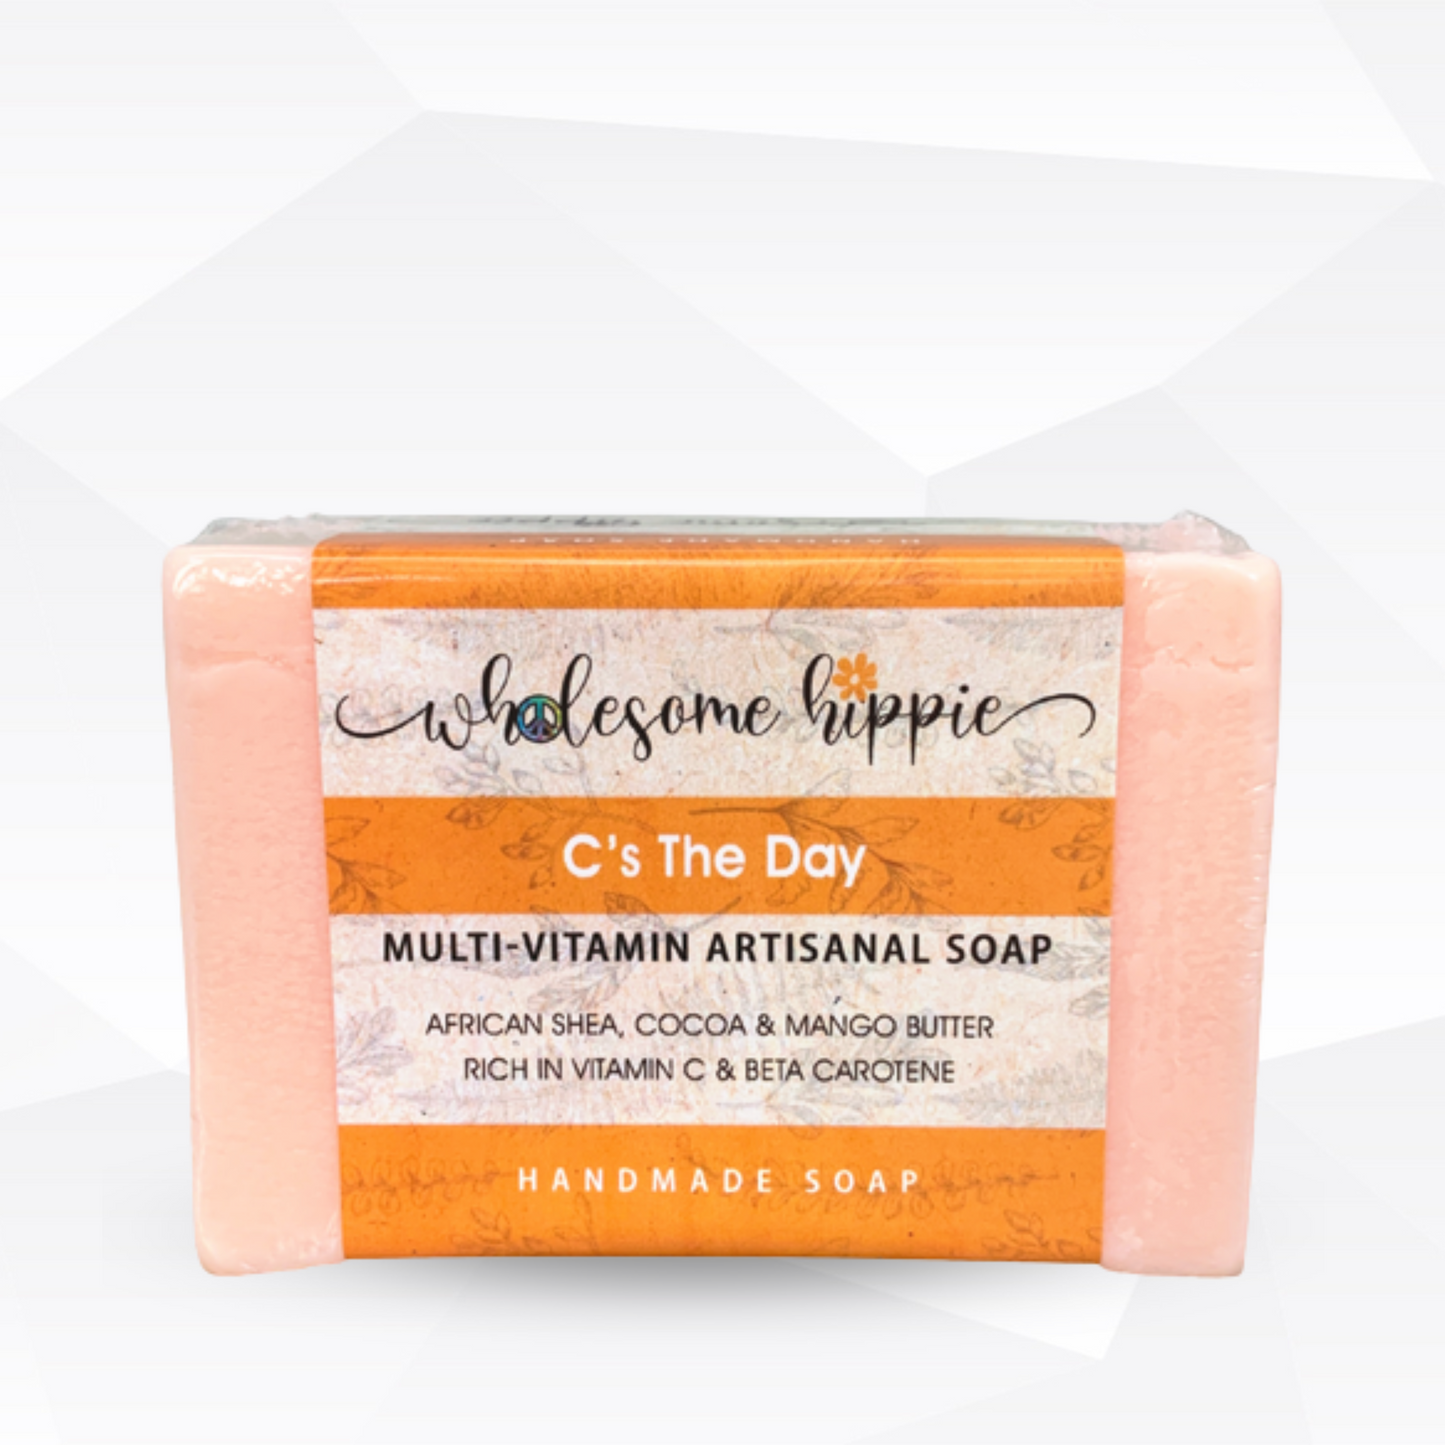 C's The Day Multi-Vitamin Artisanal Handmade Soap 6.6oz